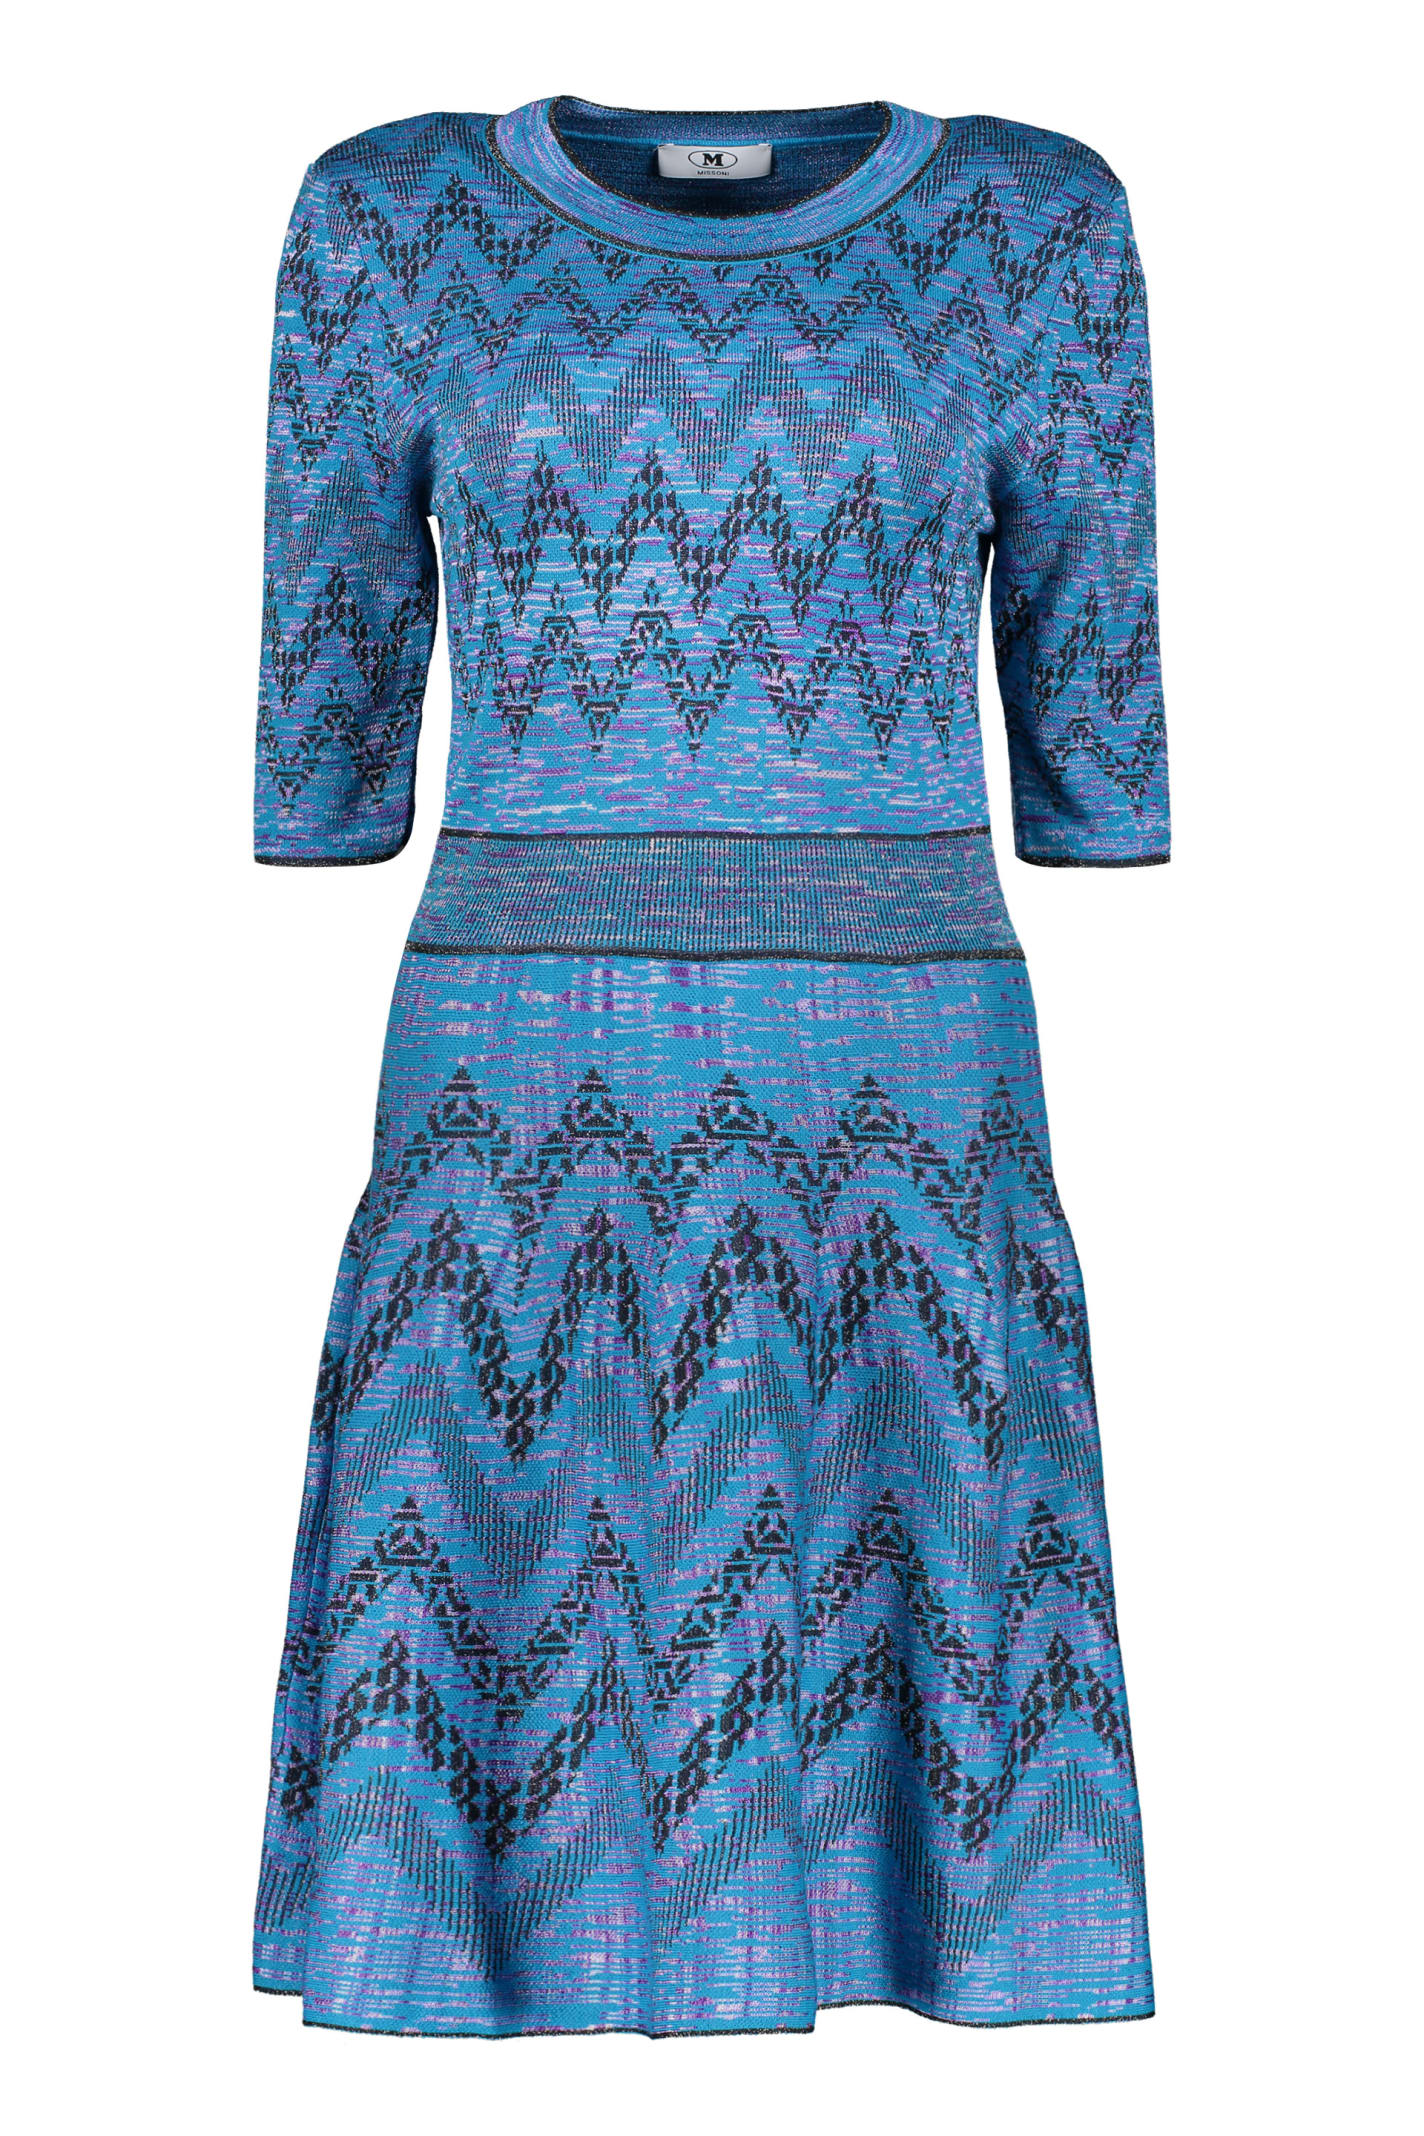 Missoni Viscose Dress In Blue